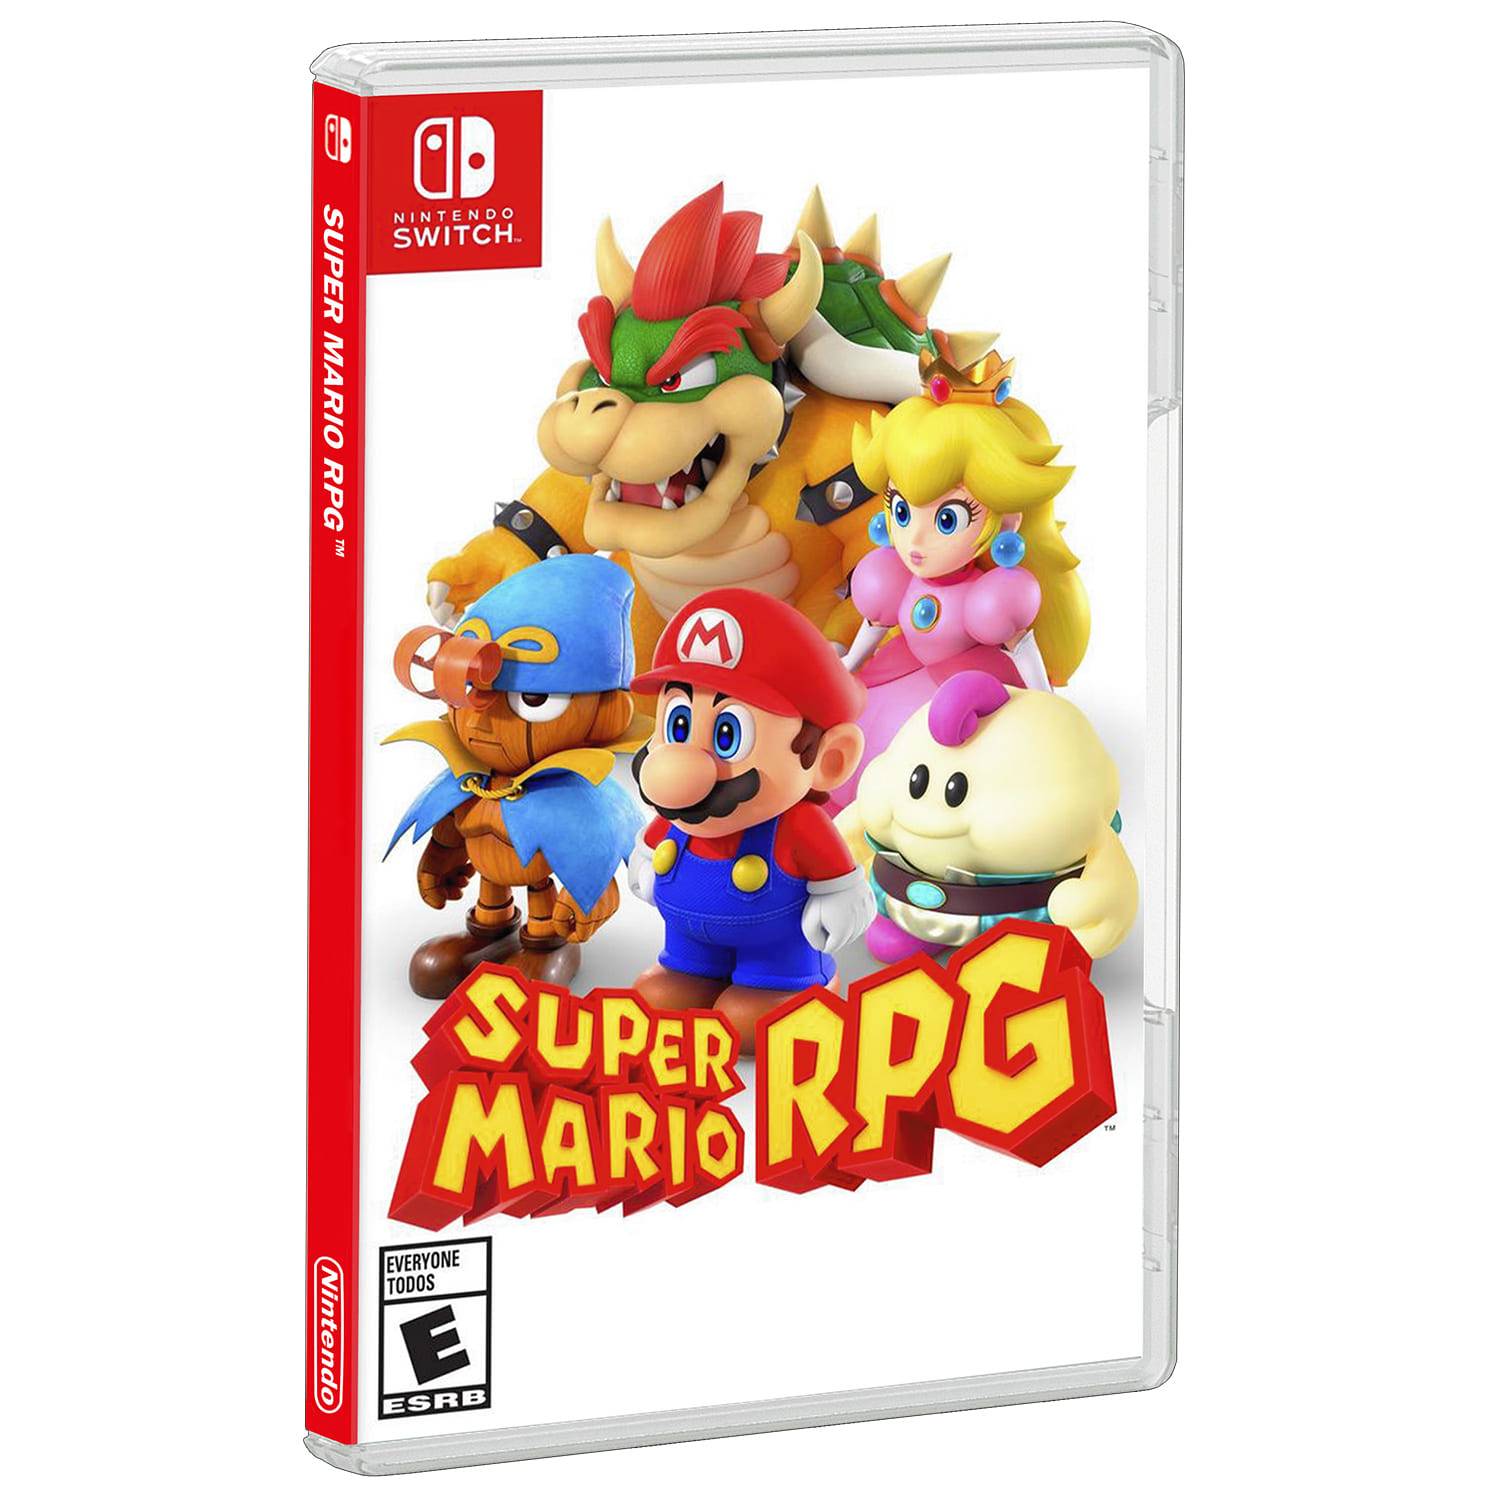  Super Mario RPG - Nintendo Switch (US Version) : Todo lo demás